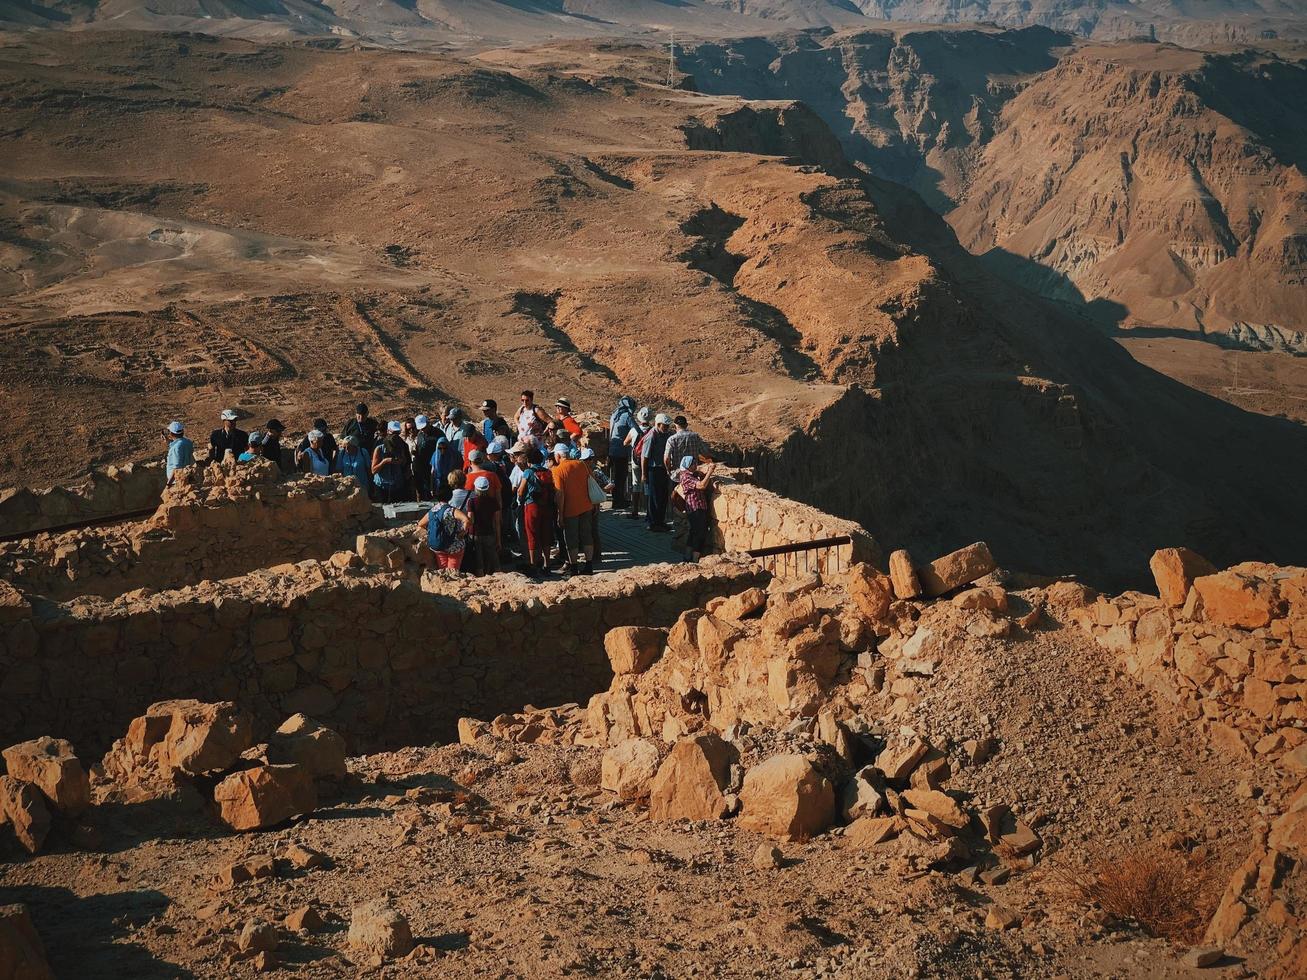 negev, Israël, 2020 - mensen kijken uit op een klif foto